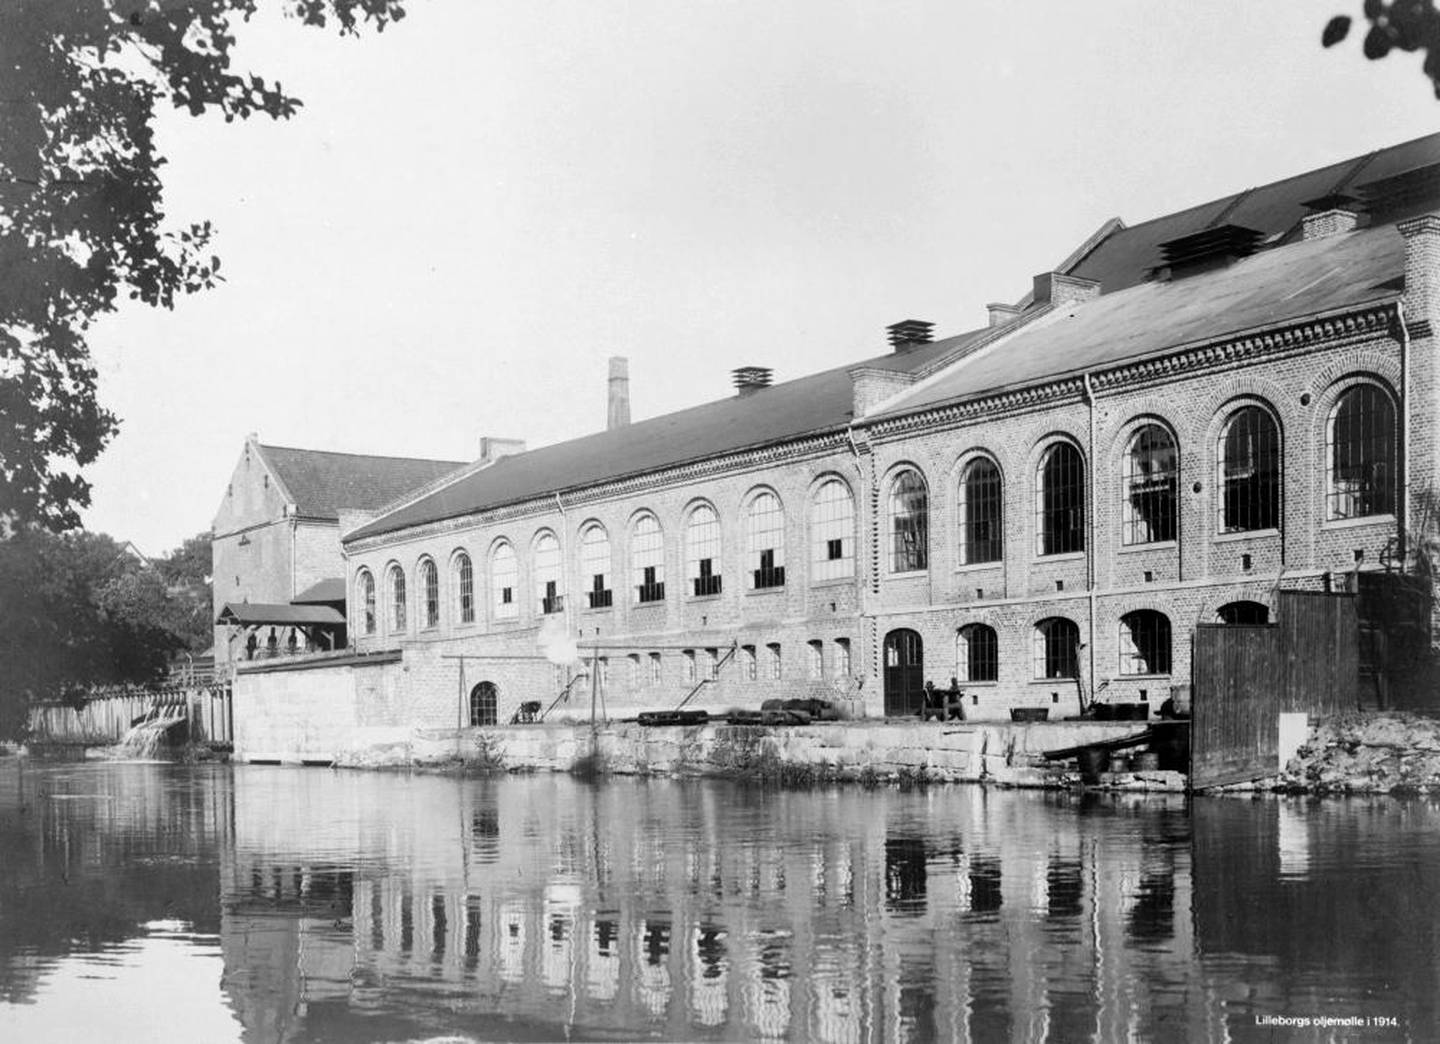 Reprofotografier av fotografier av Lilleborg fabrikker. Påskrift: "Lilleborgs oljemølle i 1914."